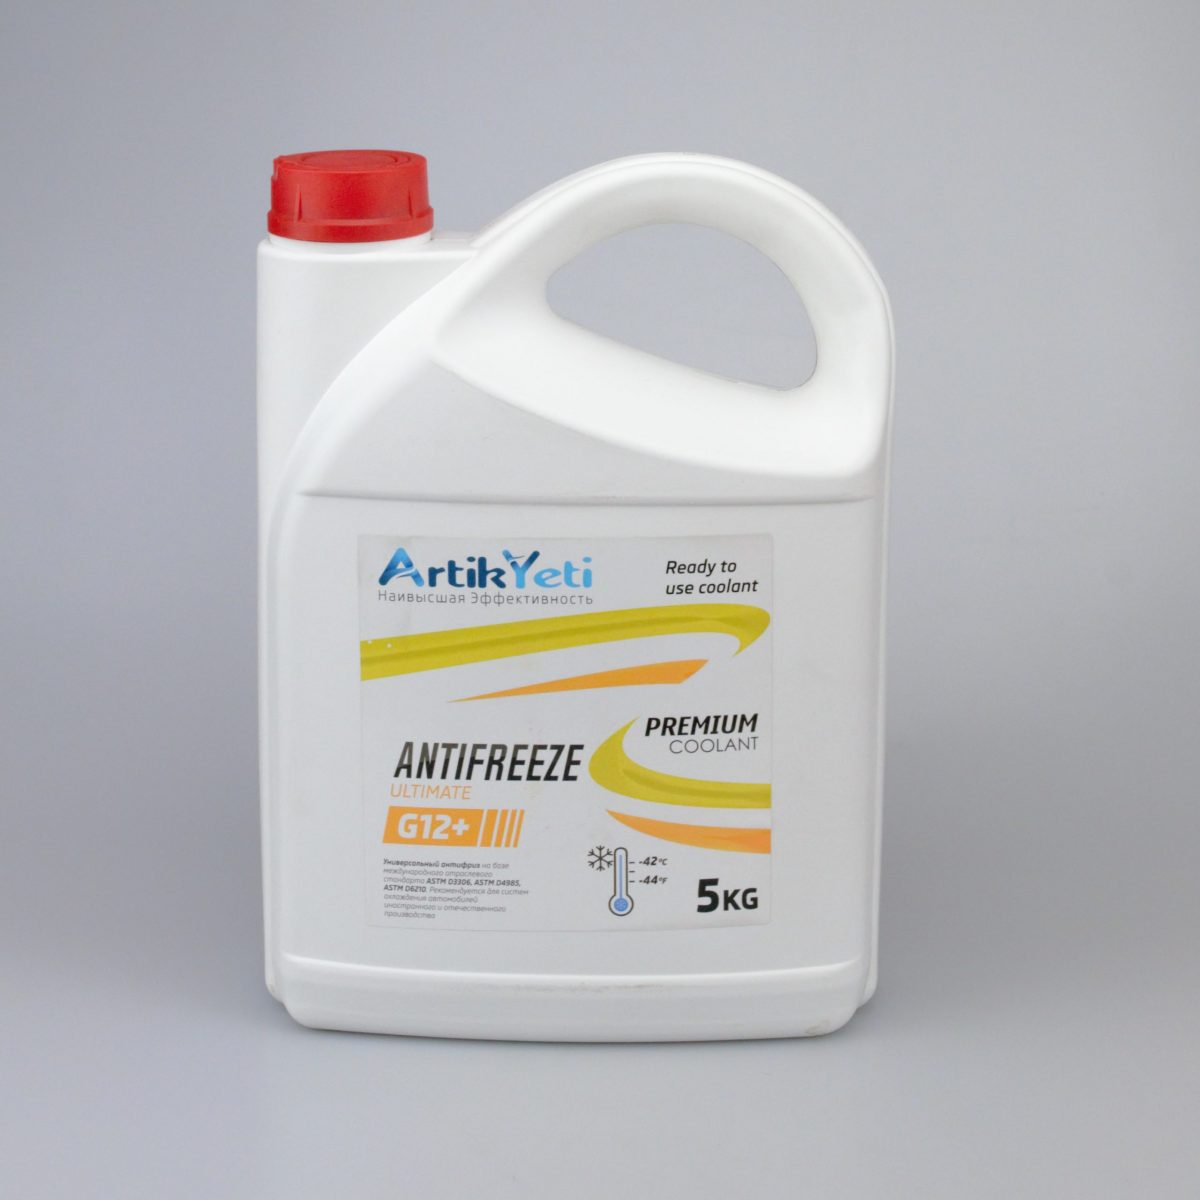 Стоимость антифриза - ArtikYeti Antifreeze Ultimate G12+ желтый 5кг